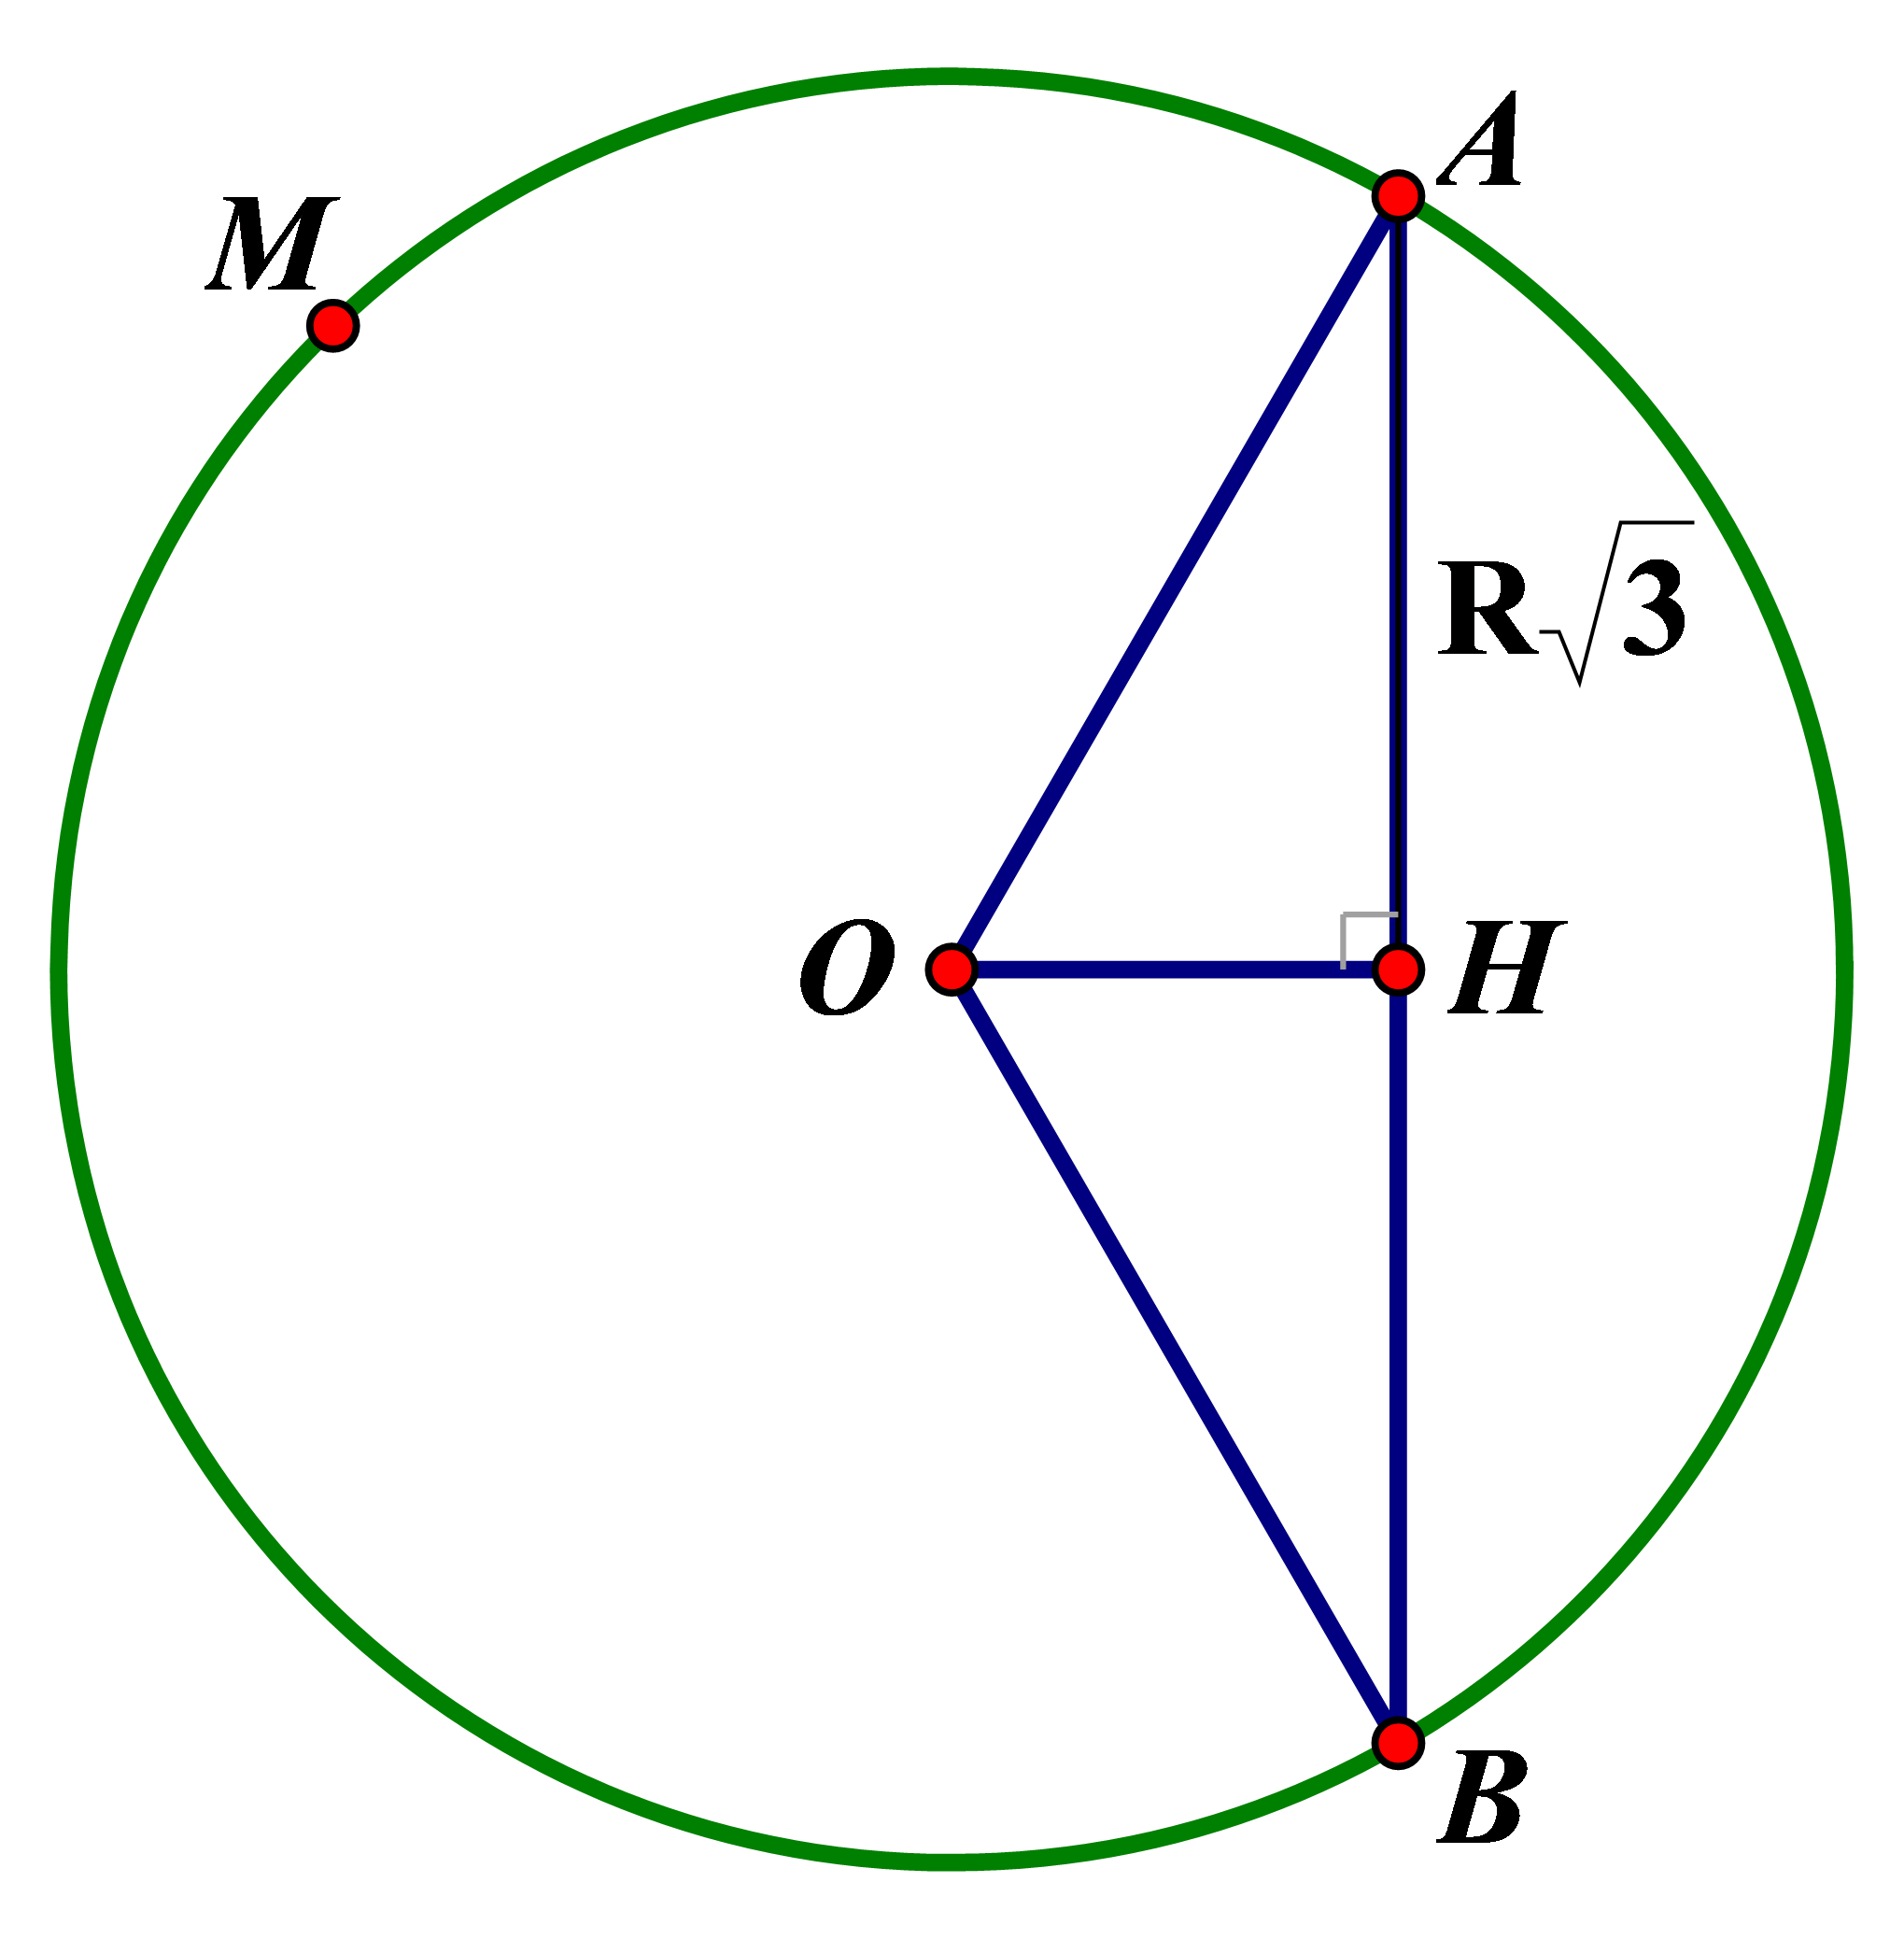 Cho (O;R), AB là dây cung của đường (O) sao cho AB = R căn 3 . M là một điểm trên cung lớn AB. Số đo cung AMB là bao nhiêu? (ảnh 1)